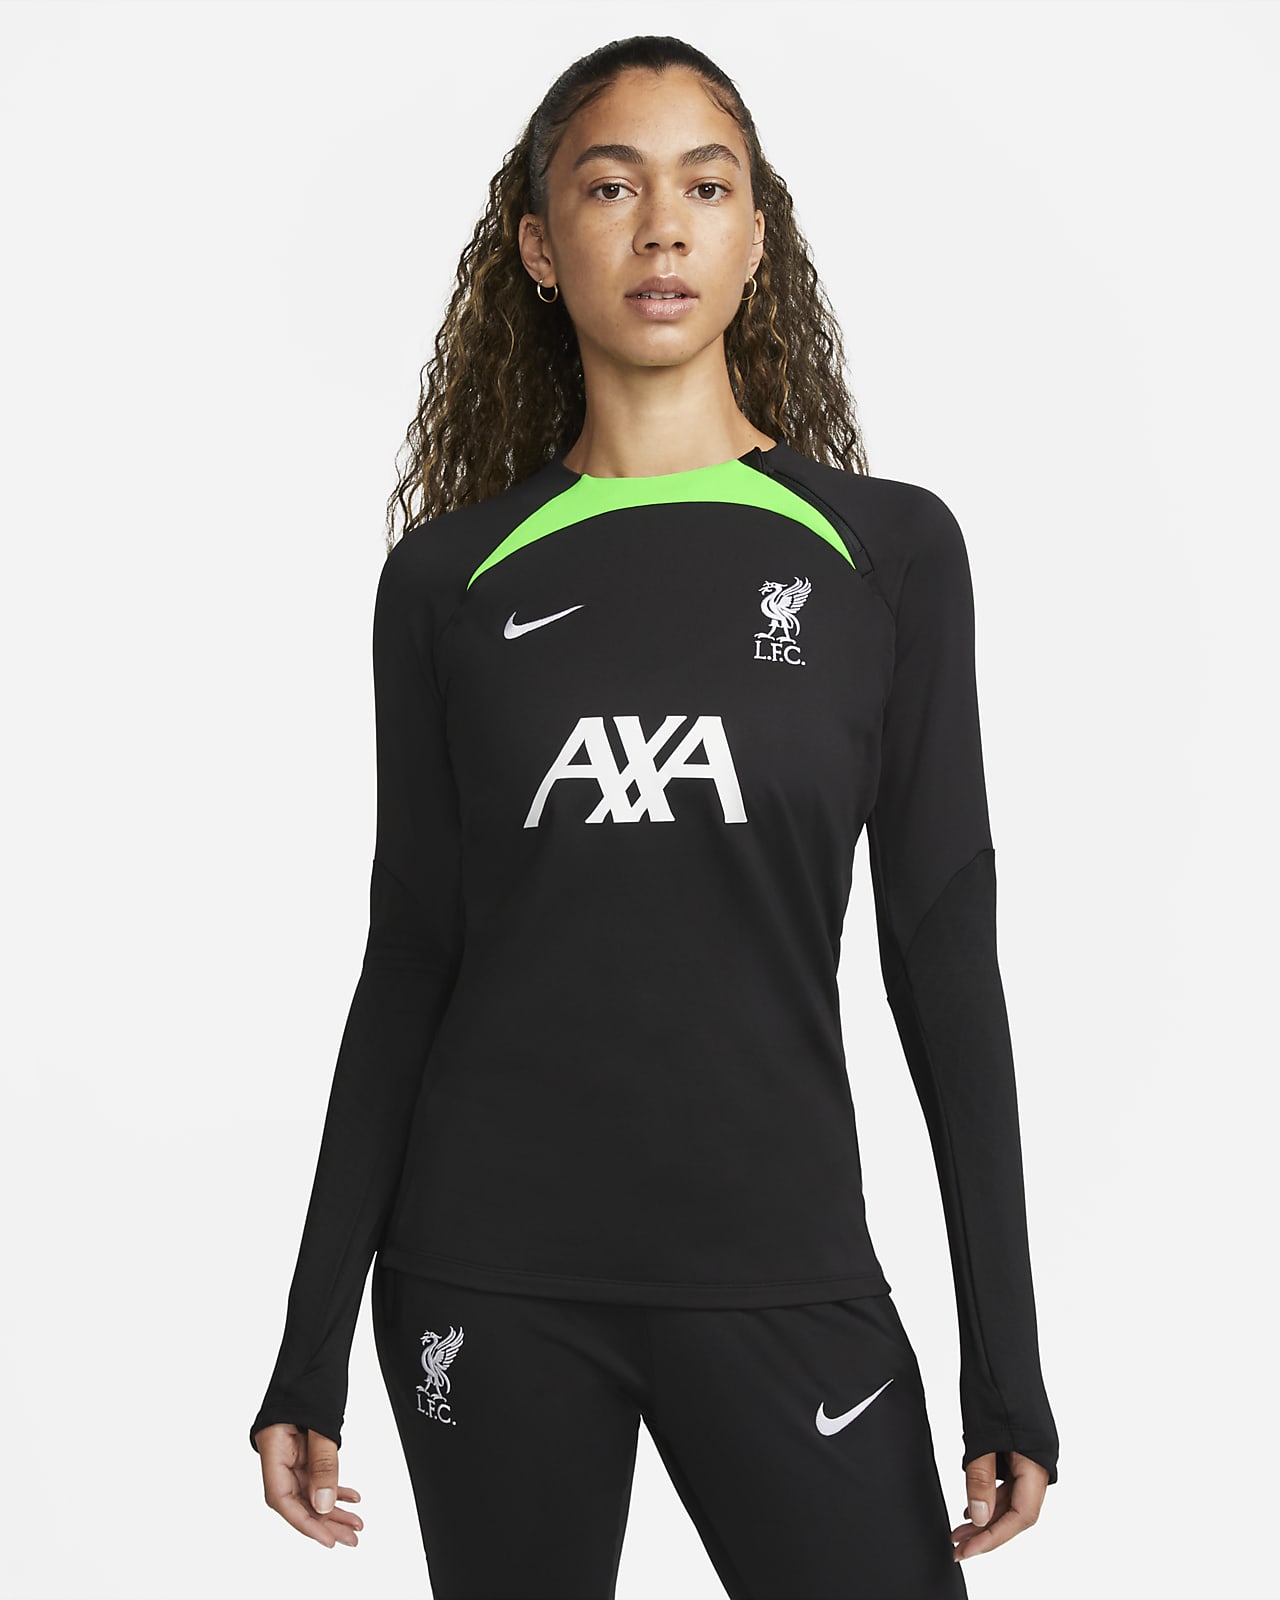 Γυναικεία ποδοσφαιρική μπλούζα προπόνησης με λαιμόκοψη crew Nike Dri-FIT Λίβερπουλ Strike